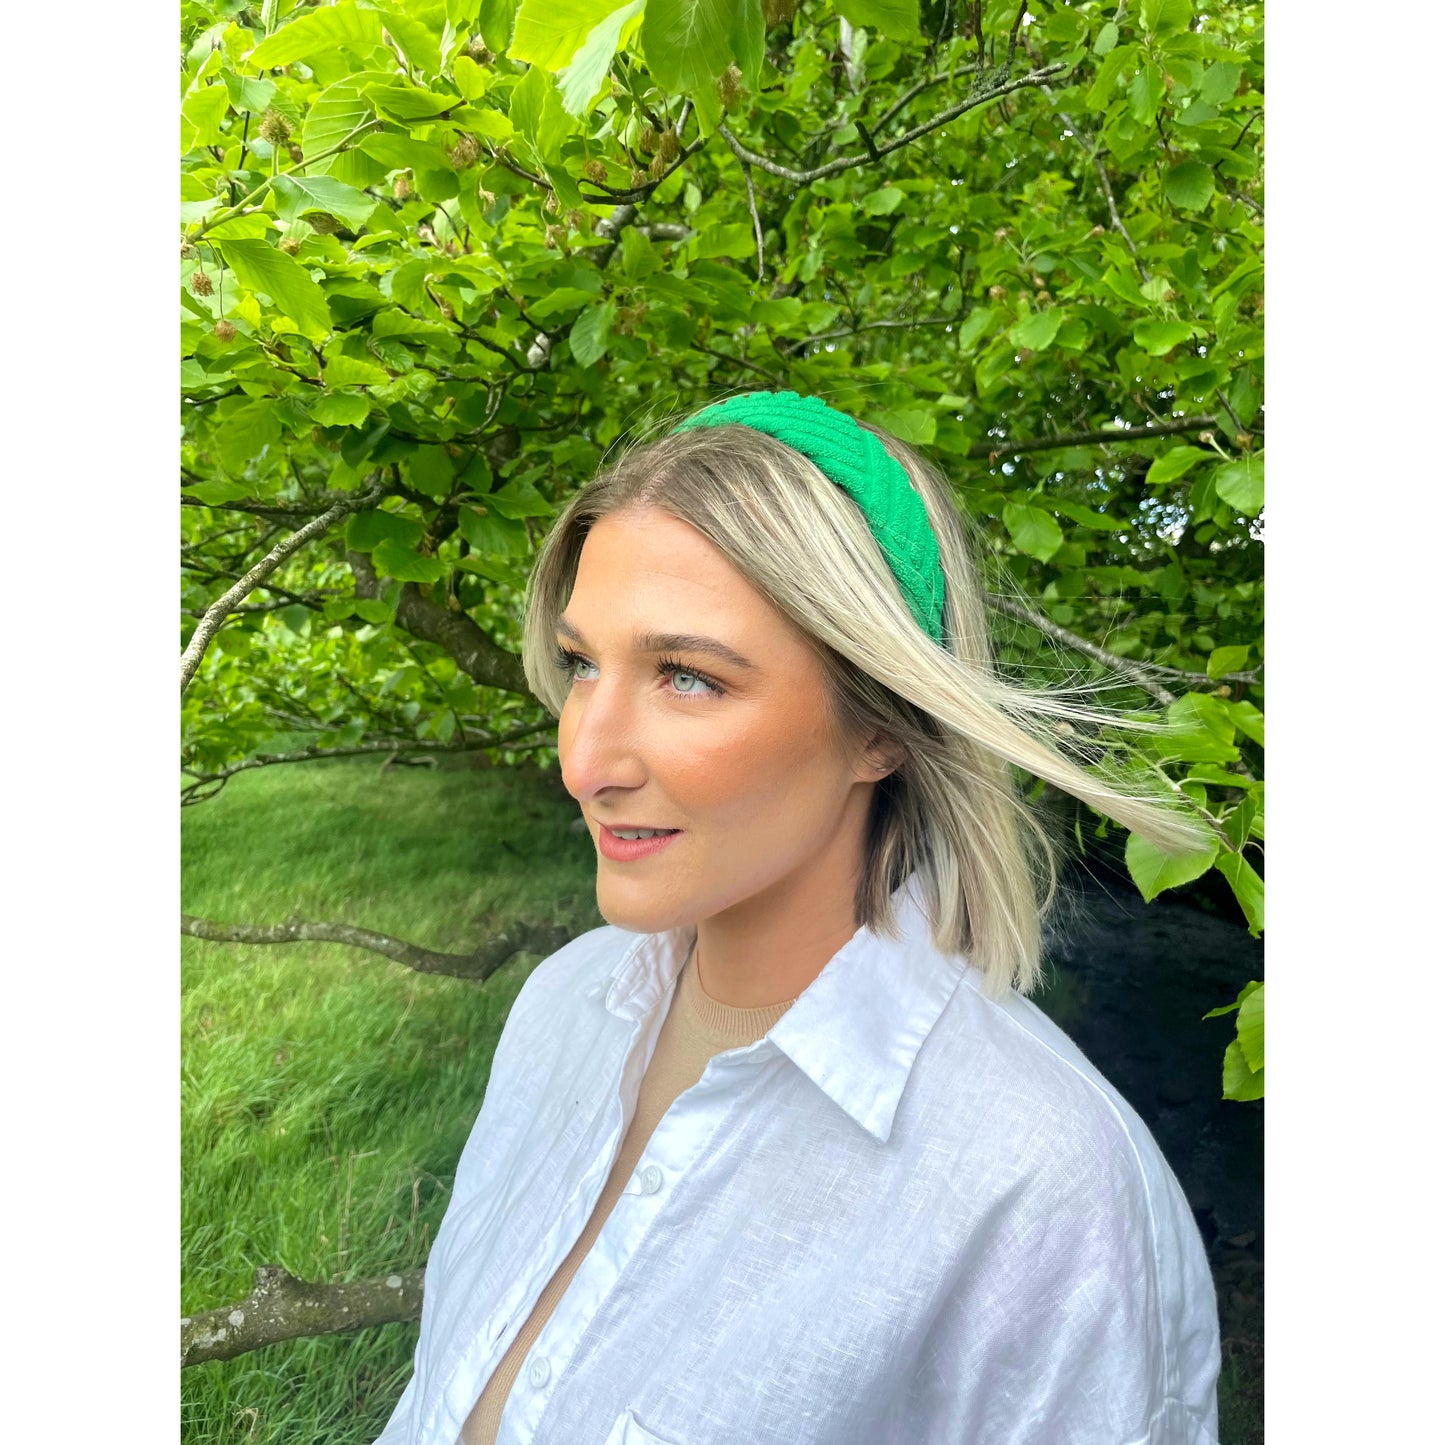 Bright green velvet headband